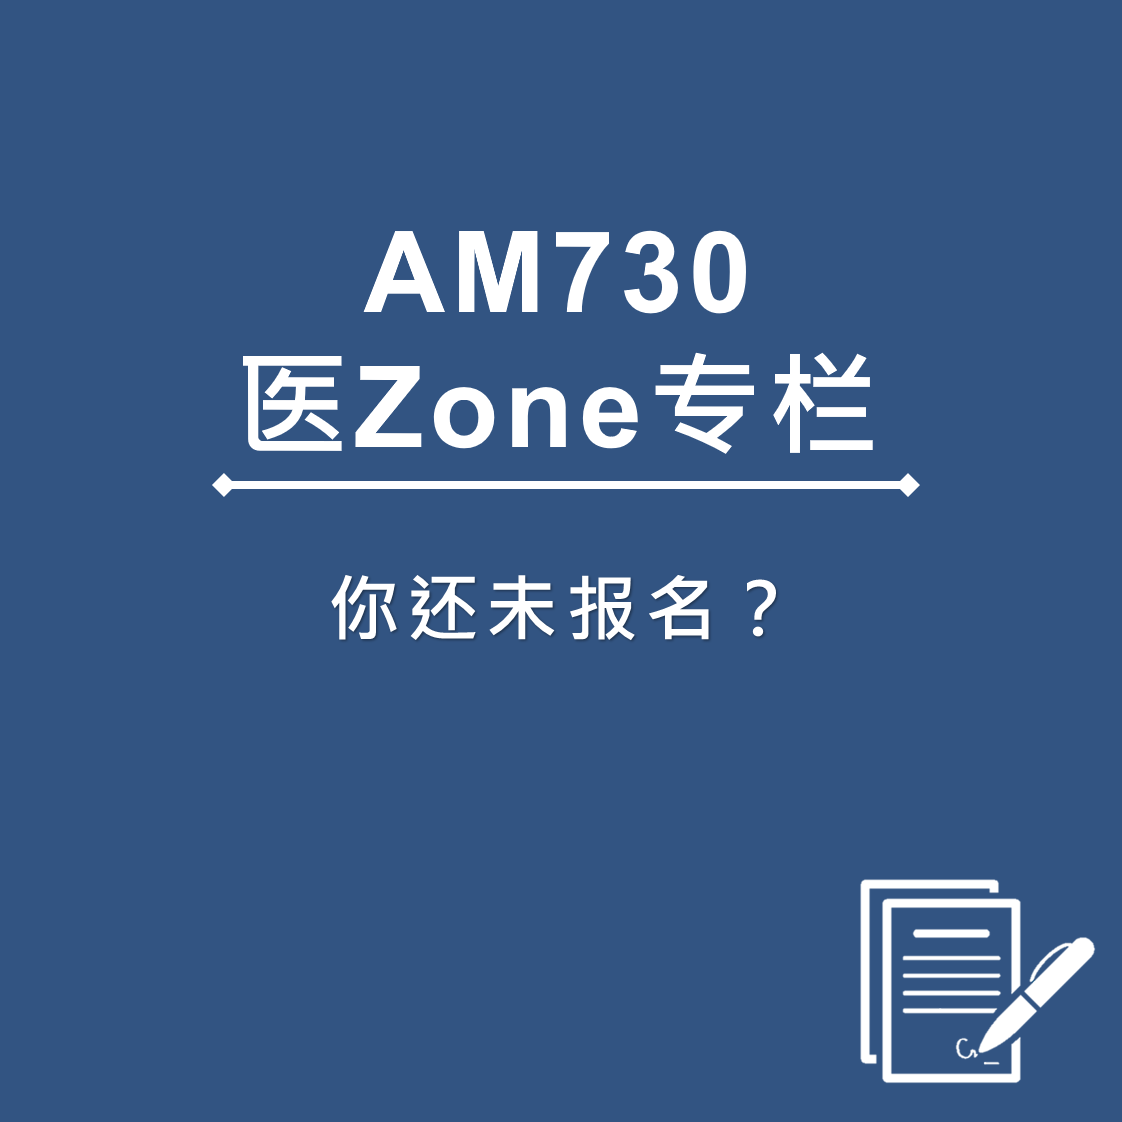 AM730 医Zone 专栏 - 你还未报名？